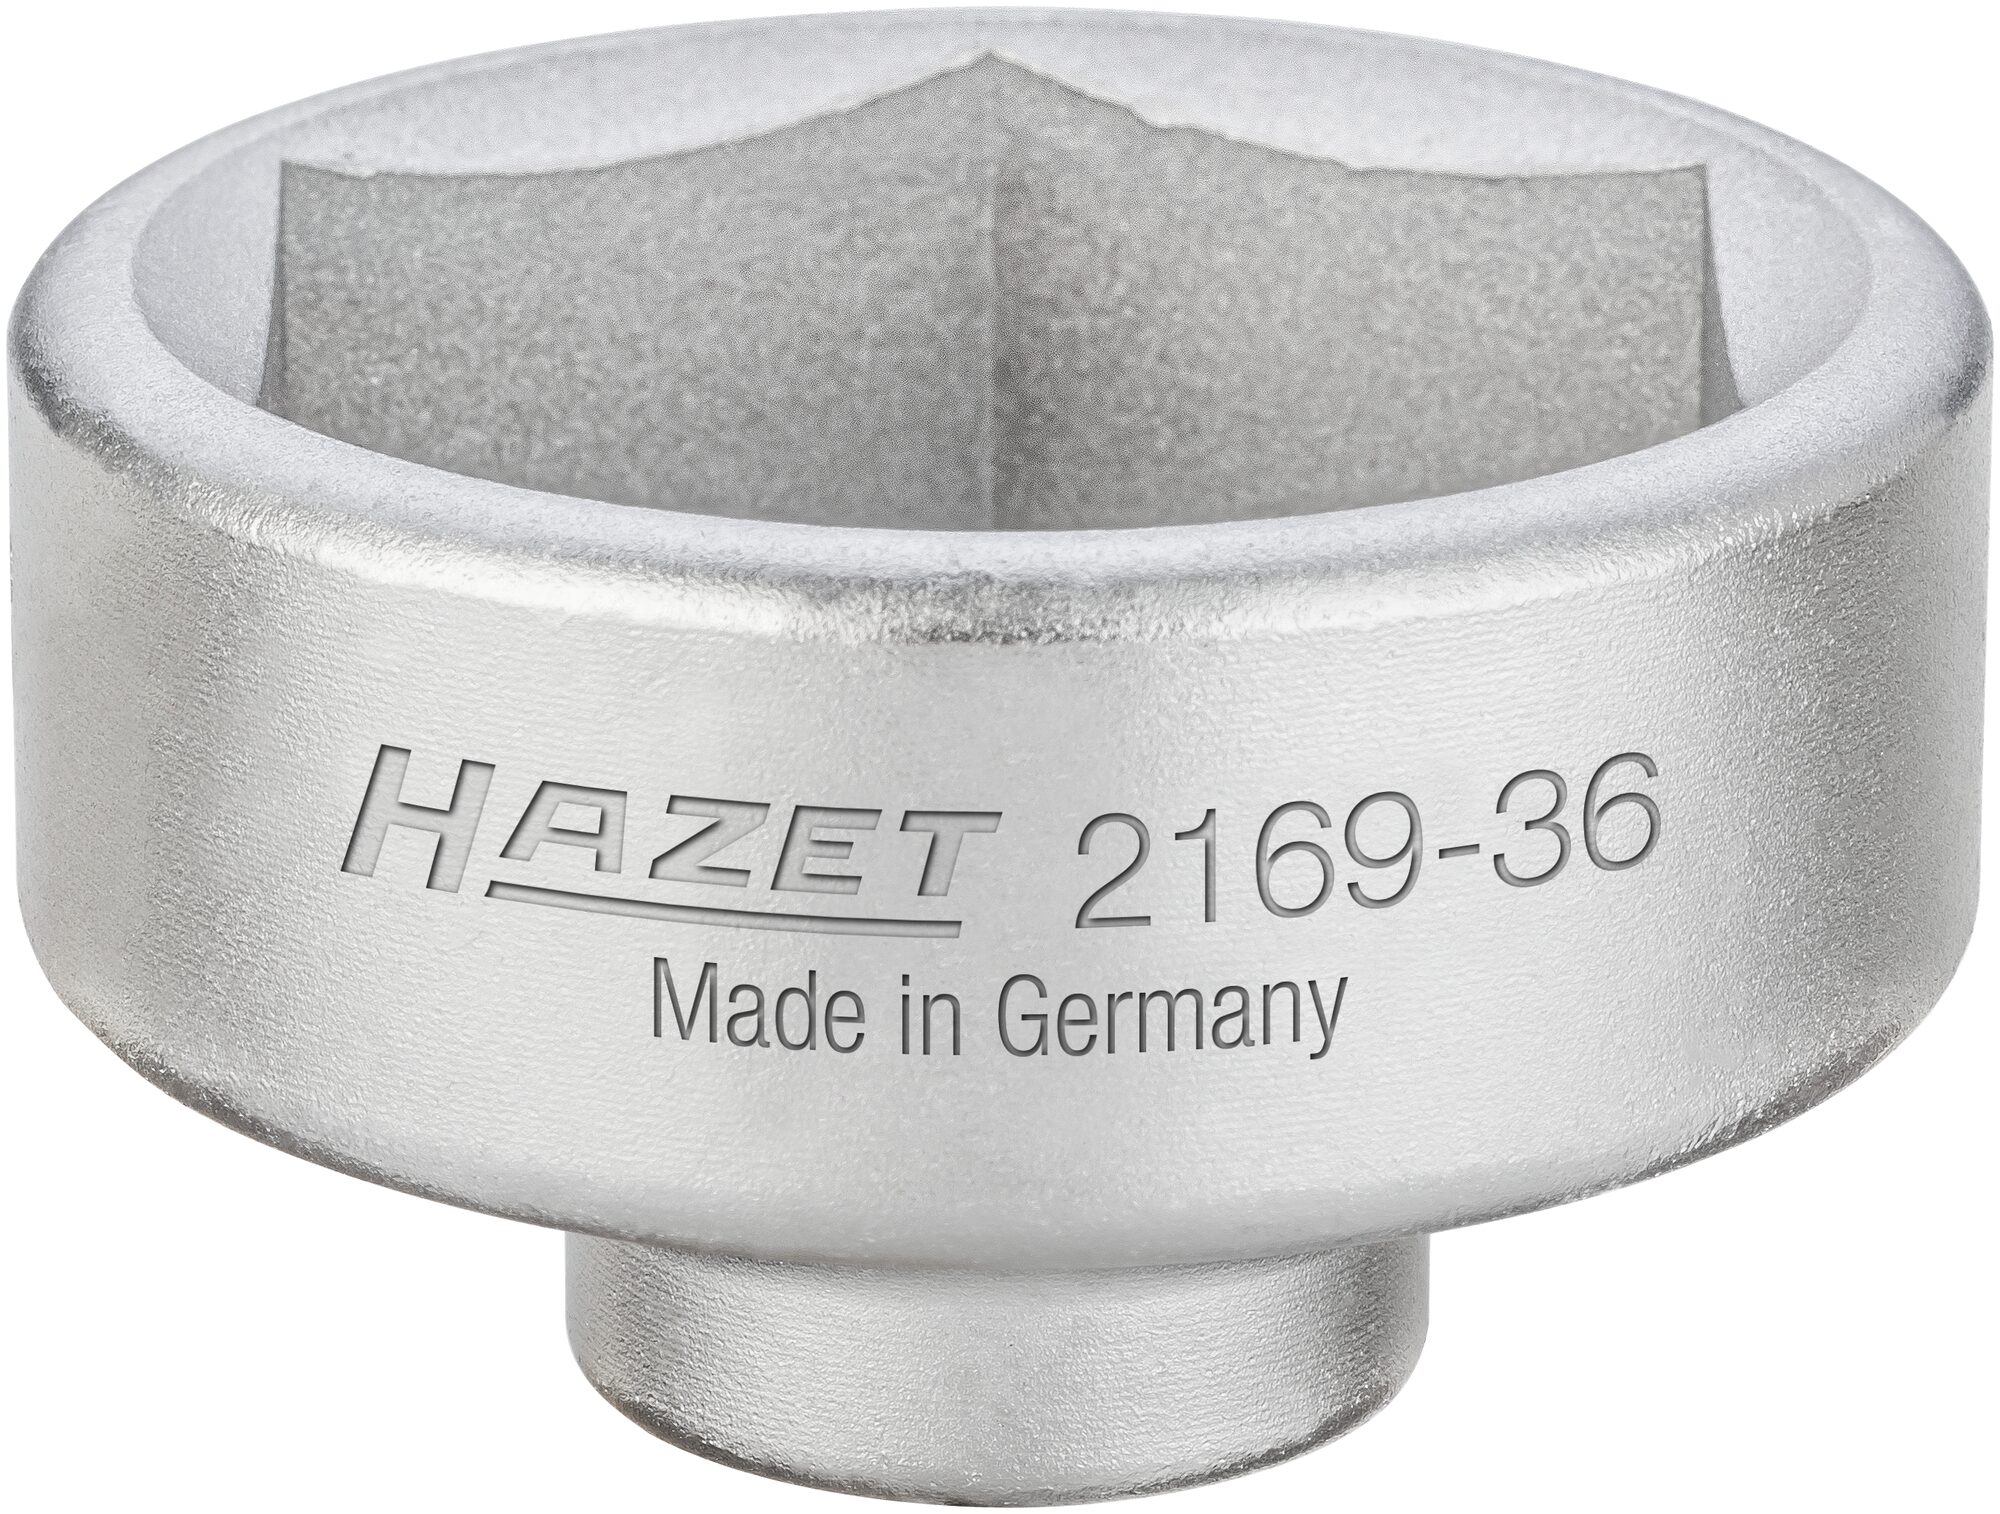 HAZET Ölfilter-Schlüssel 2169-36 · Vierkant hohl 10 mm (3/8 Zoll) · Außen Sechskant Profil · 49.5 mm